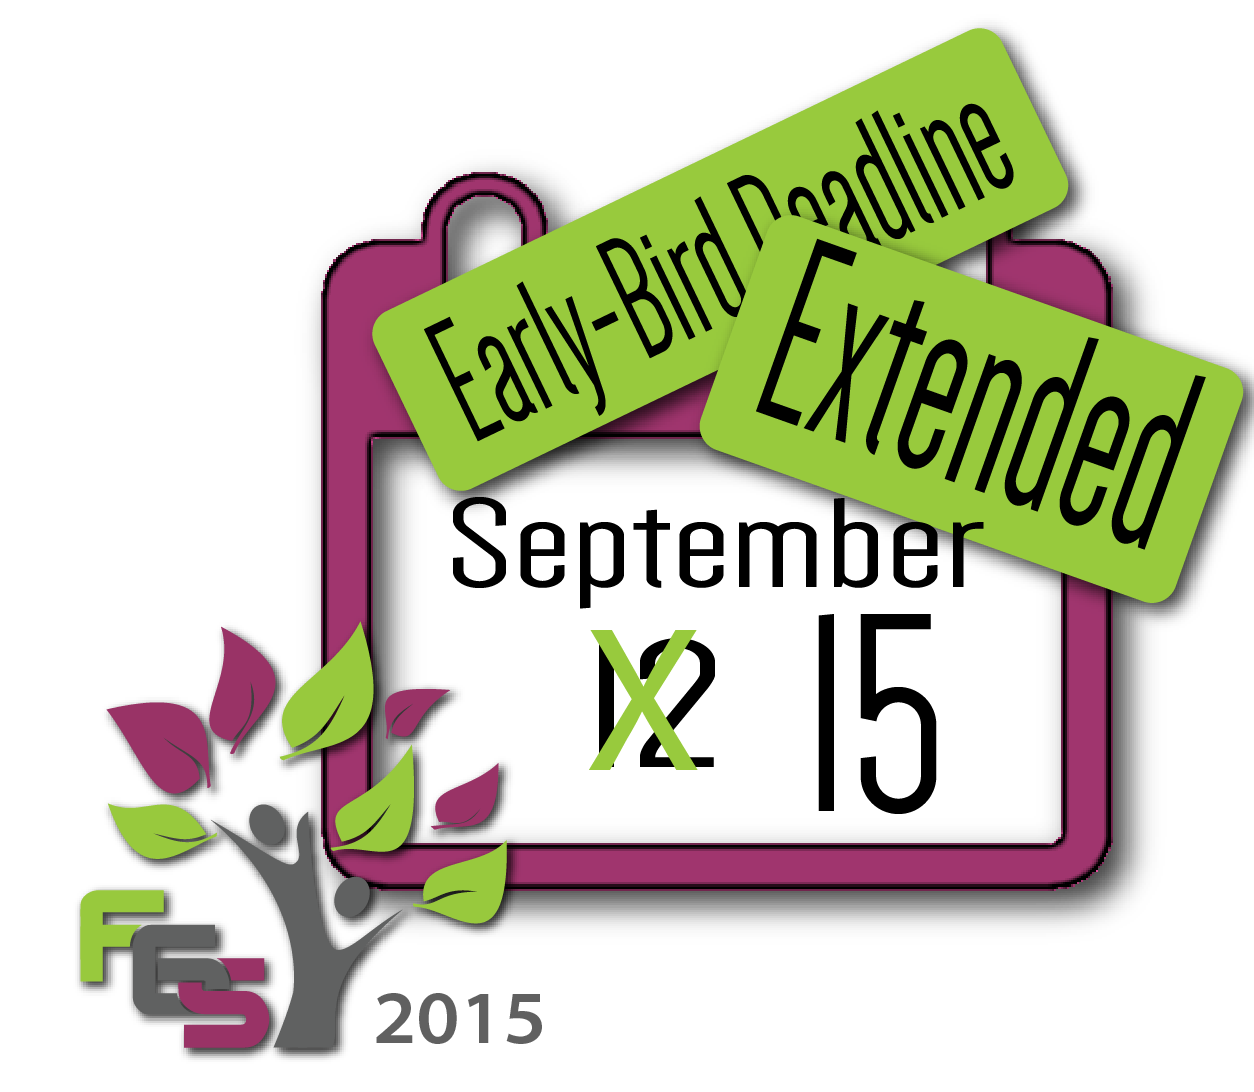 FGS 2015 Early-Bird Deadline Extended